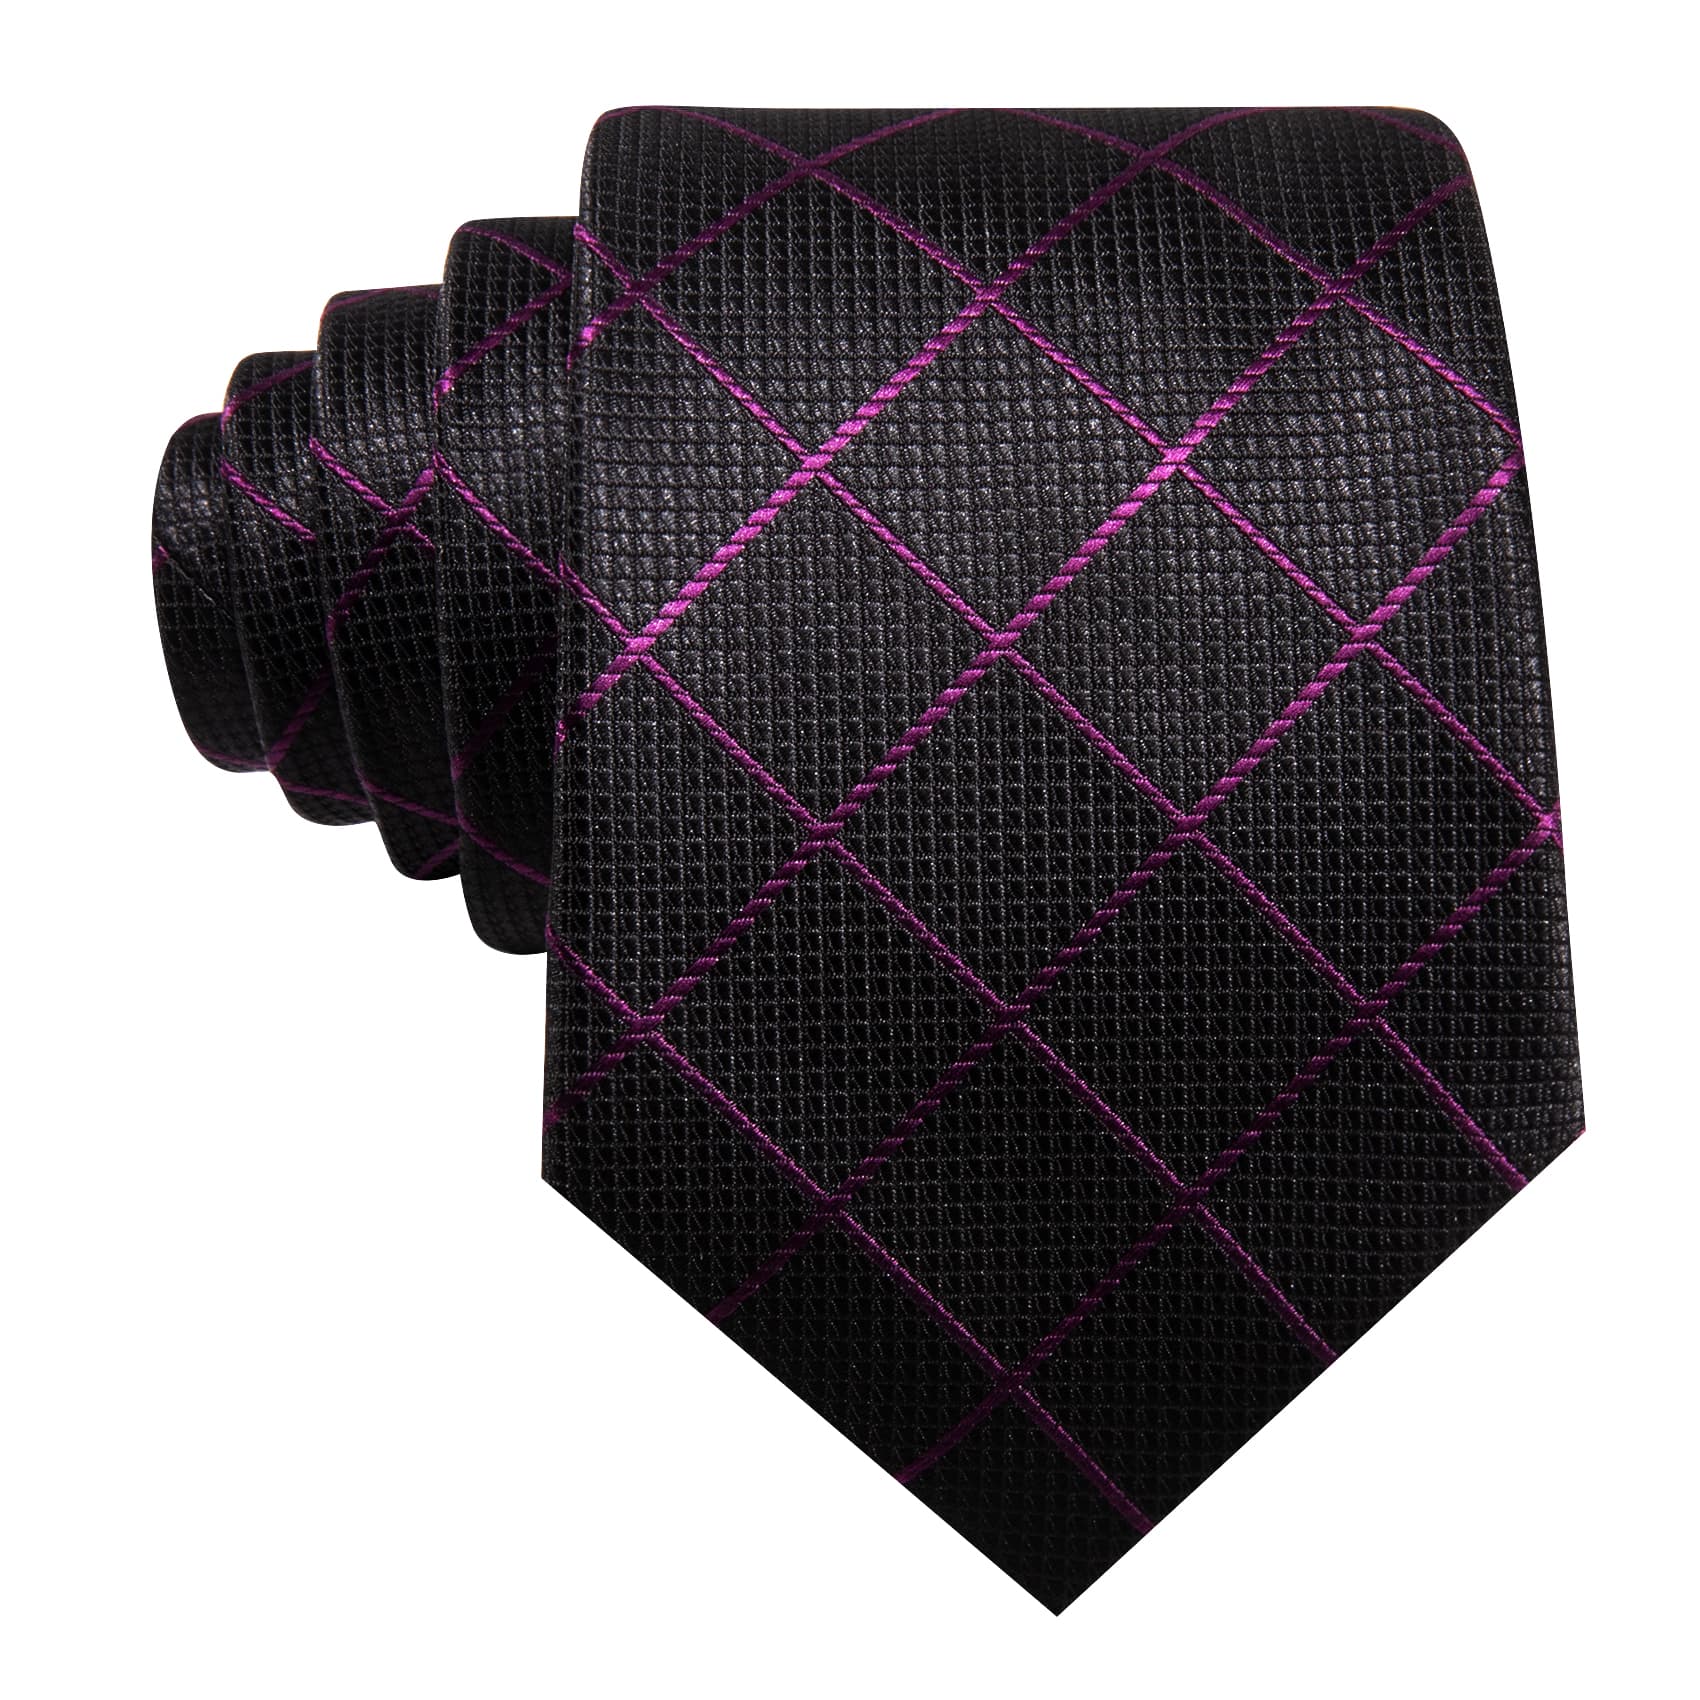  Black Plaid Tie with Purple Stripes Men's Business Set